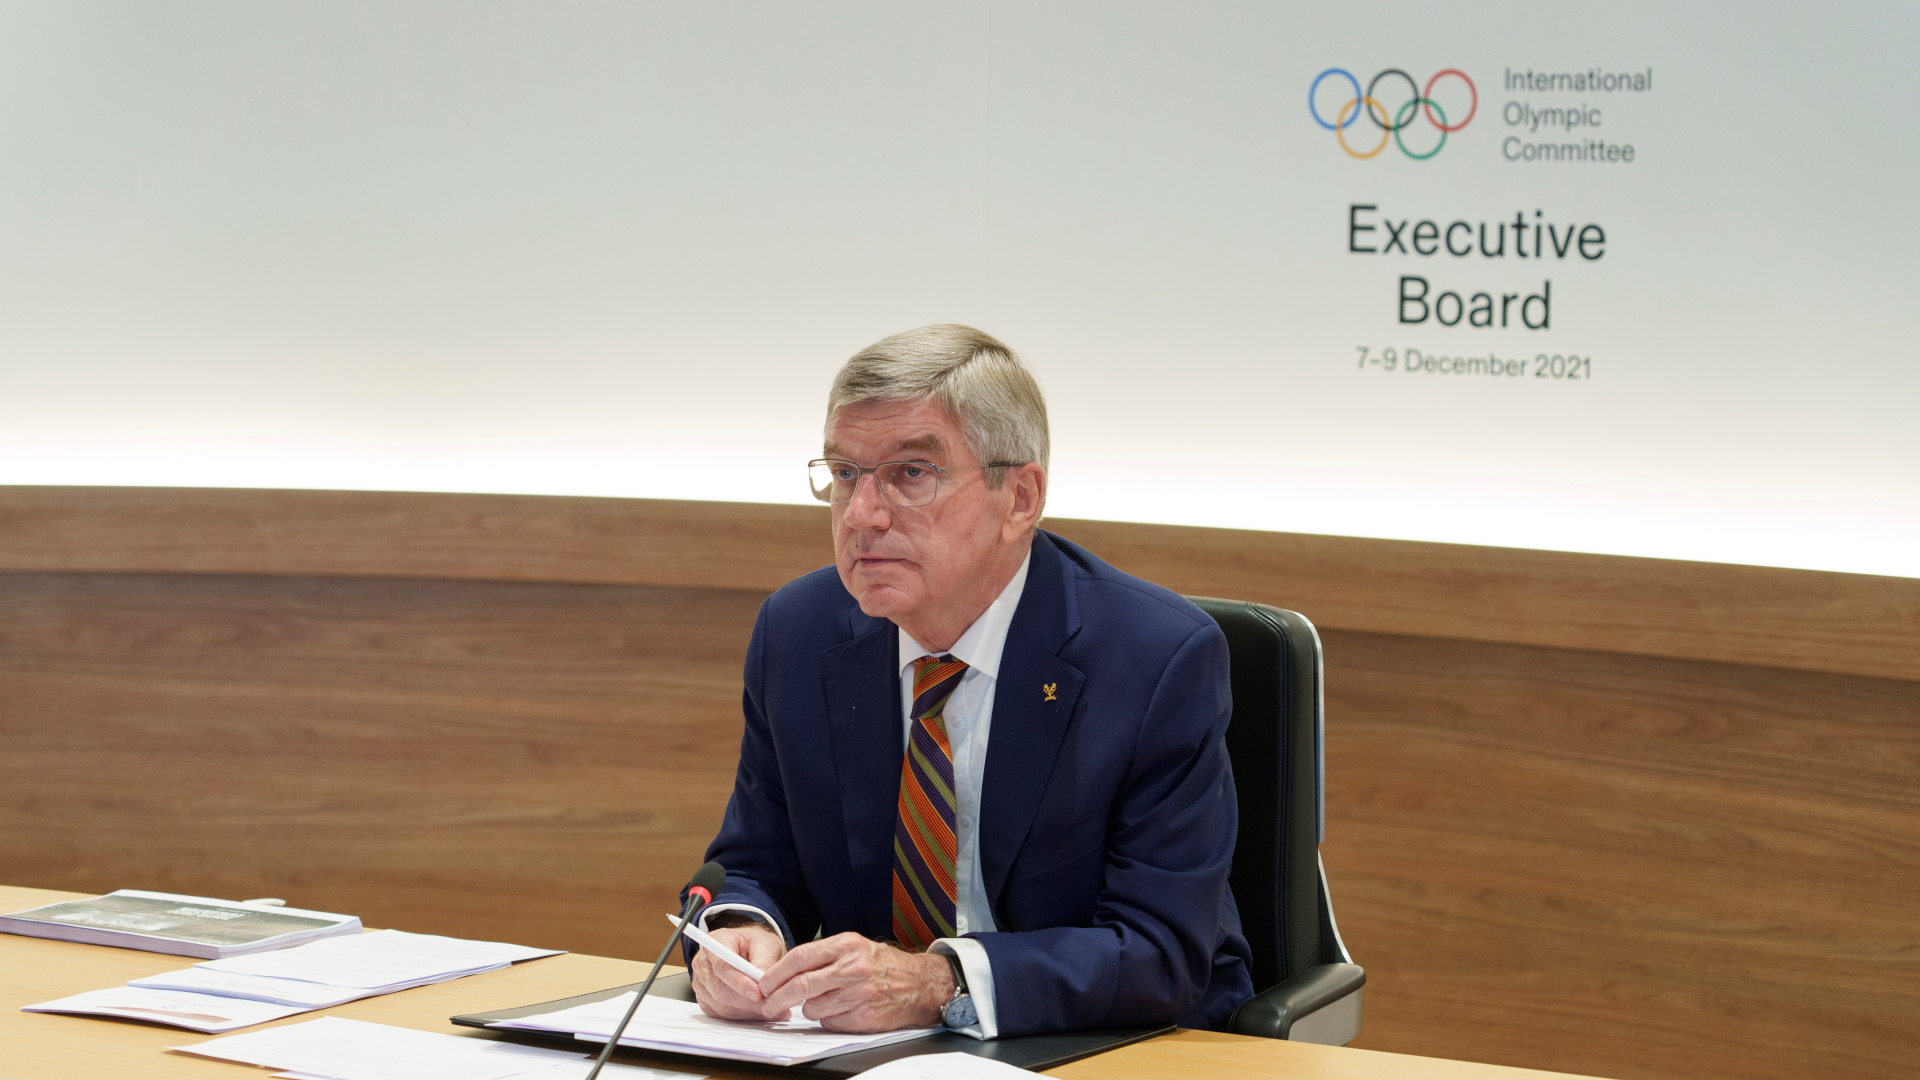 Olympiaboykott und Fall Peng: Das IOC gibt sich unbeeindruckt